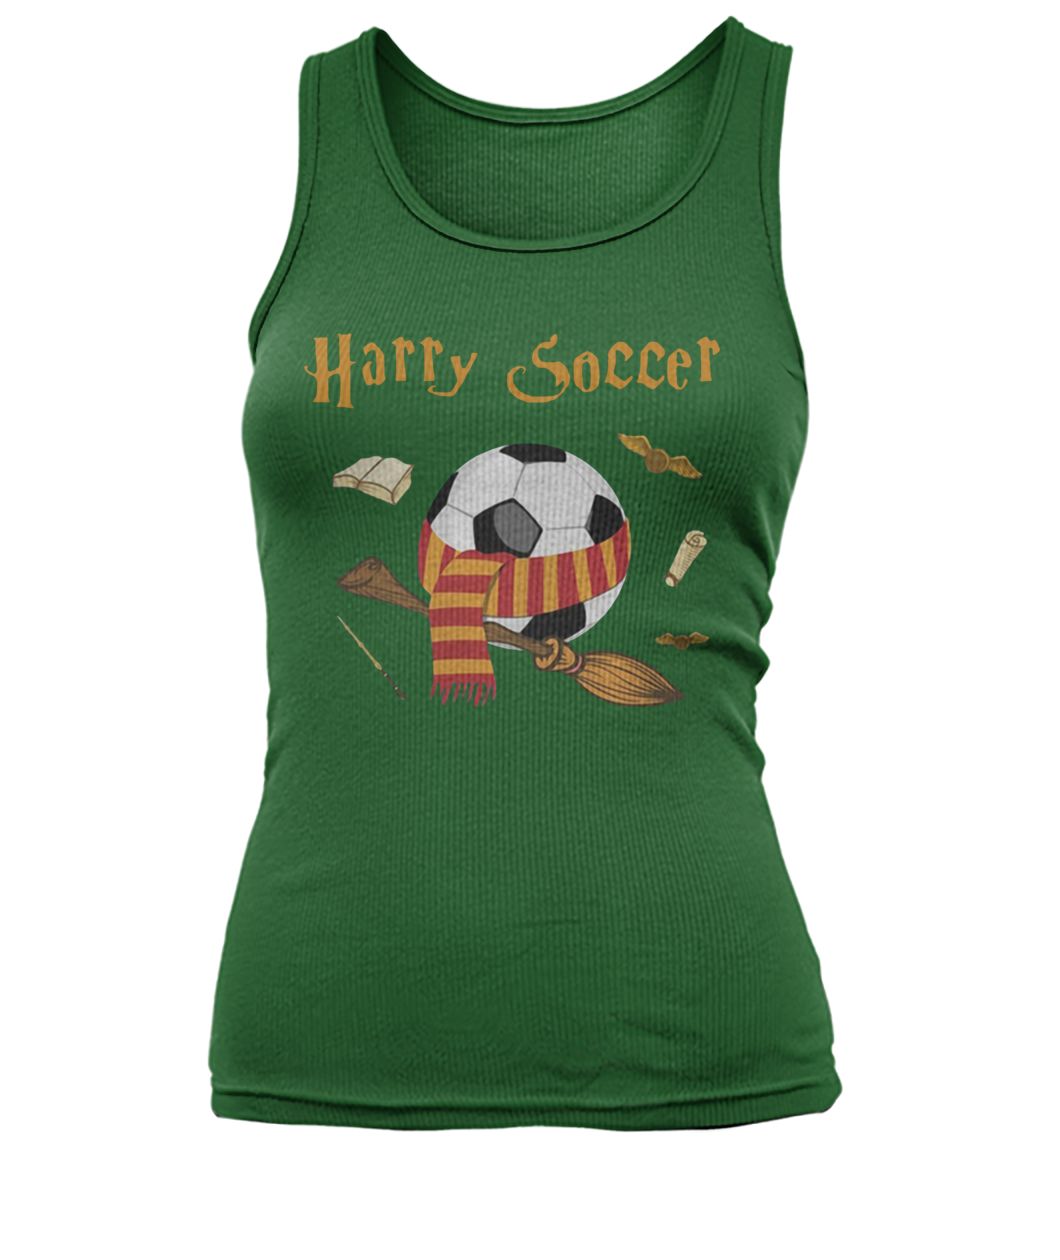 Harry potter harry soccer women's tank top